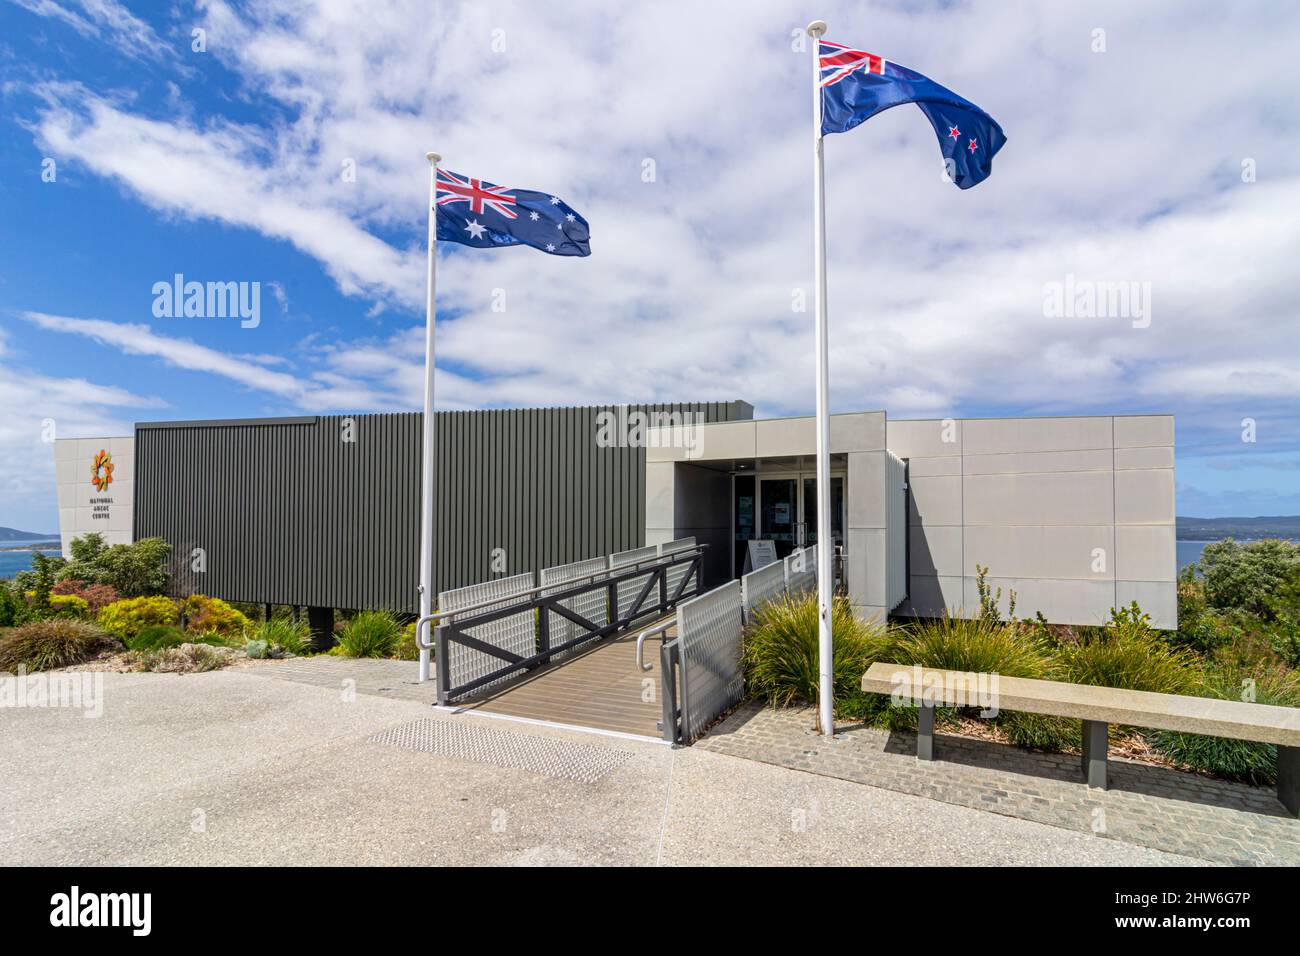 National Anzac Centre, ein modernes Museum zum Gedenken an die ANZACS des Ersten Weltkriegs, Albany, Western Australia, Australien Stockfoto